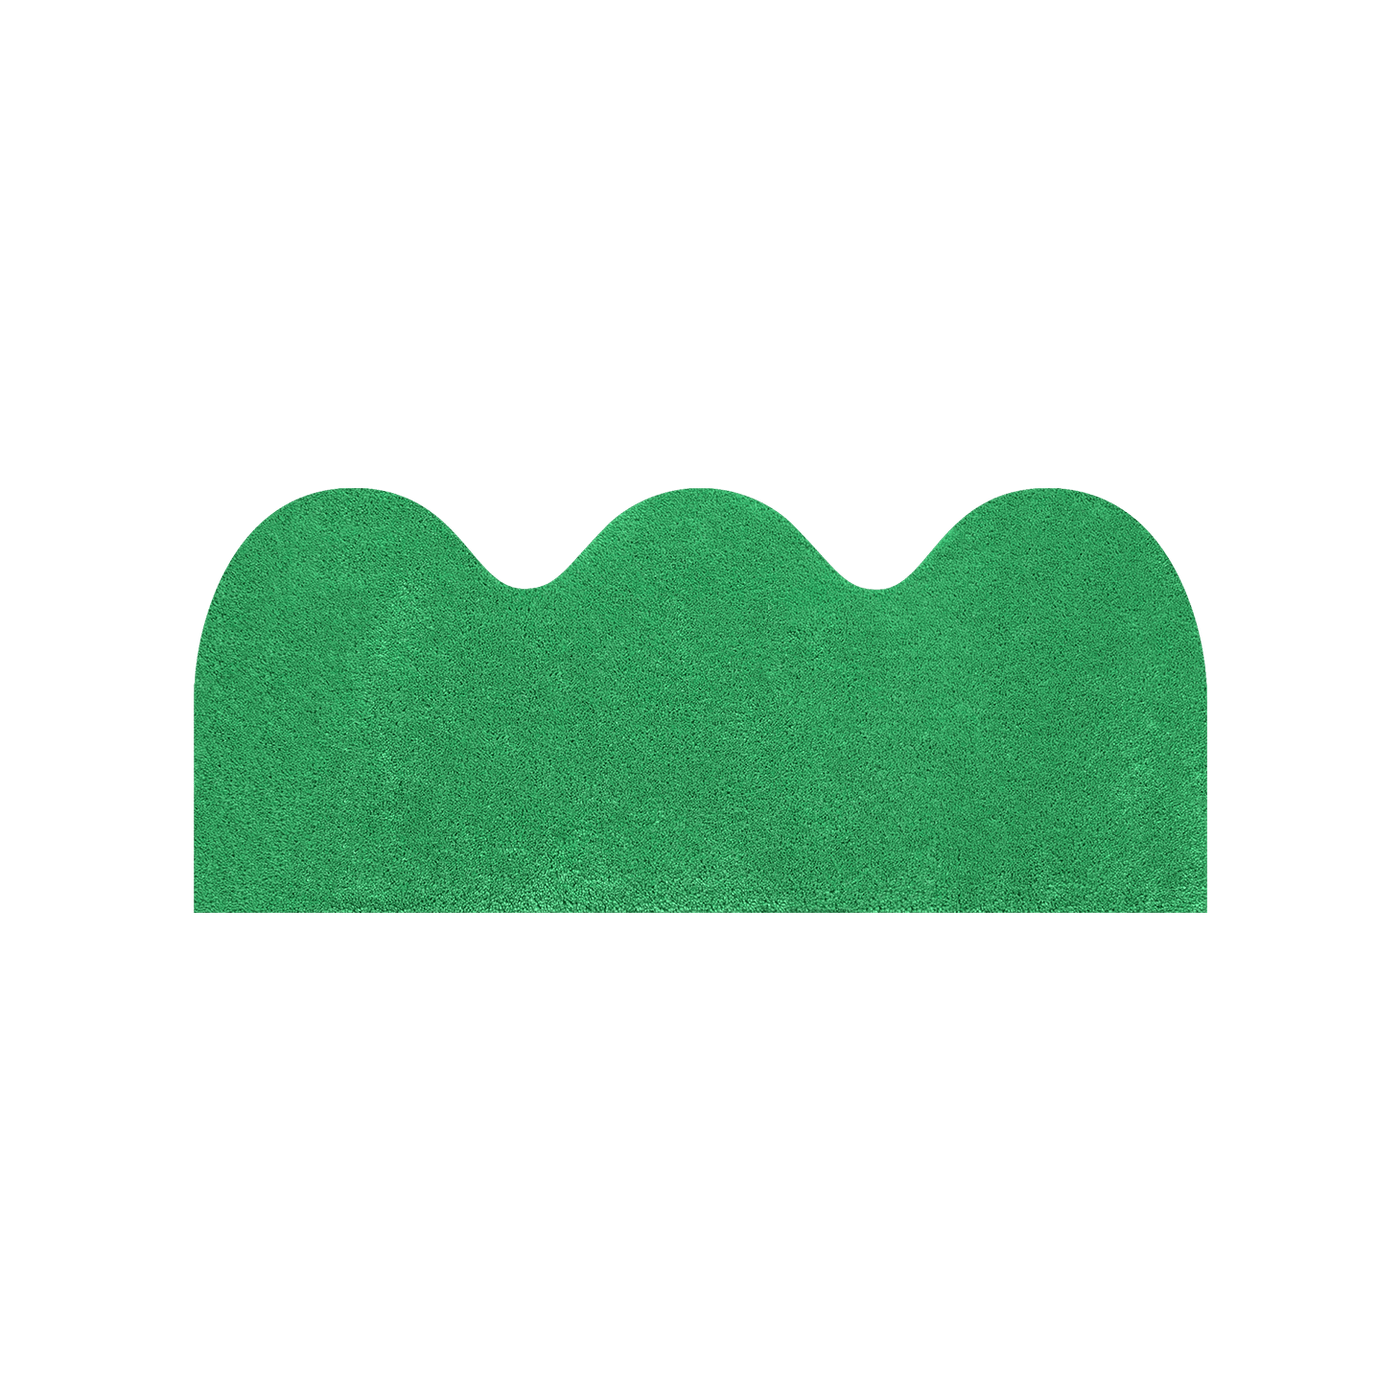 VAGUE - Grass green